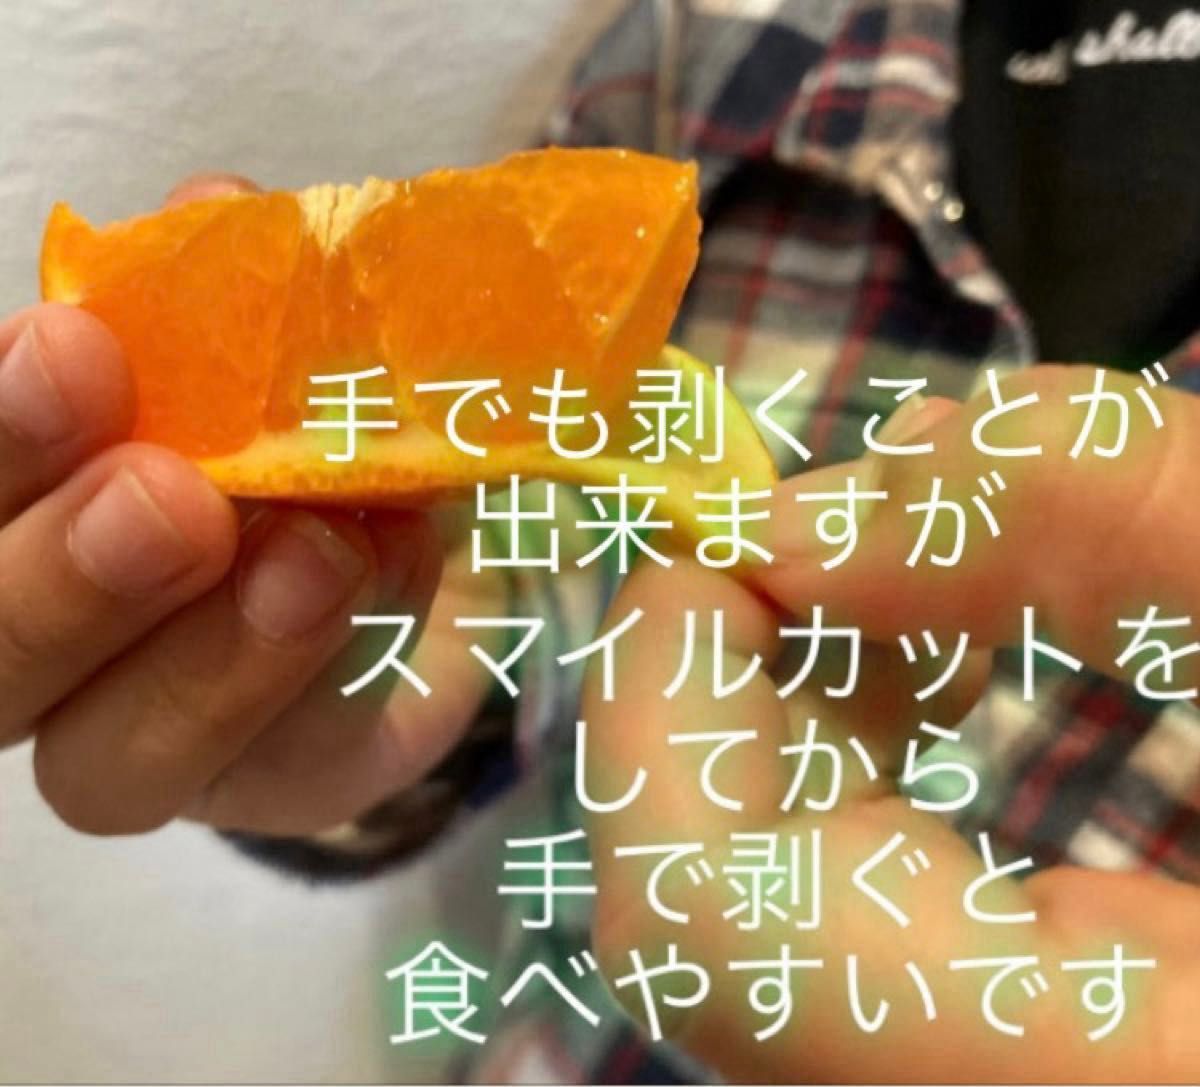 ①数量限定!和歌山県田辺産 せとか オレンジ 柑橘 優品(家庭用訳あり)2kg